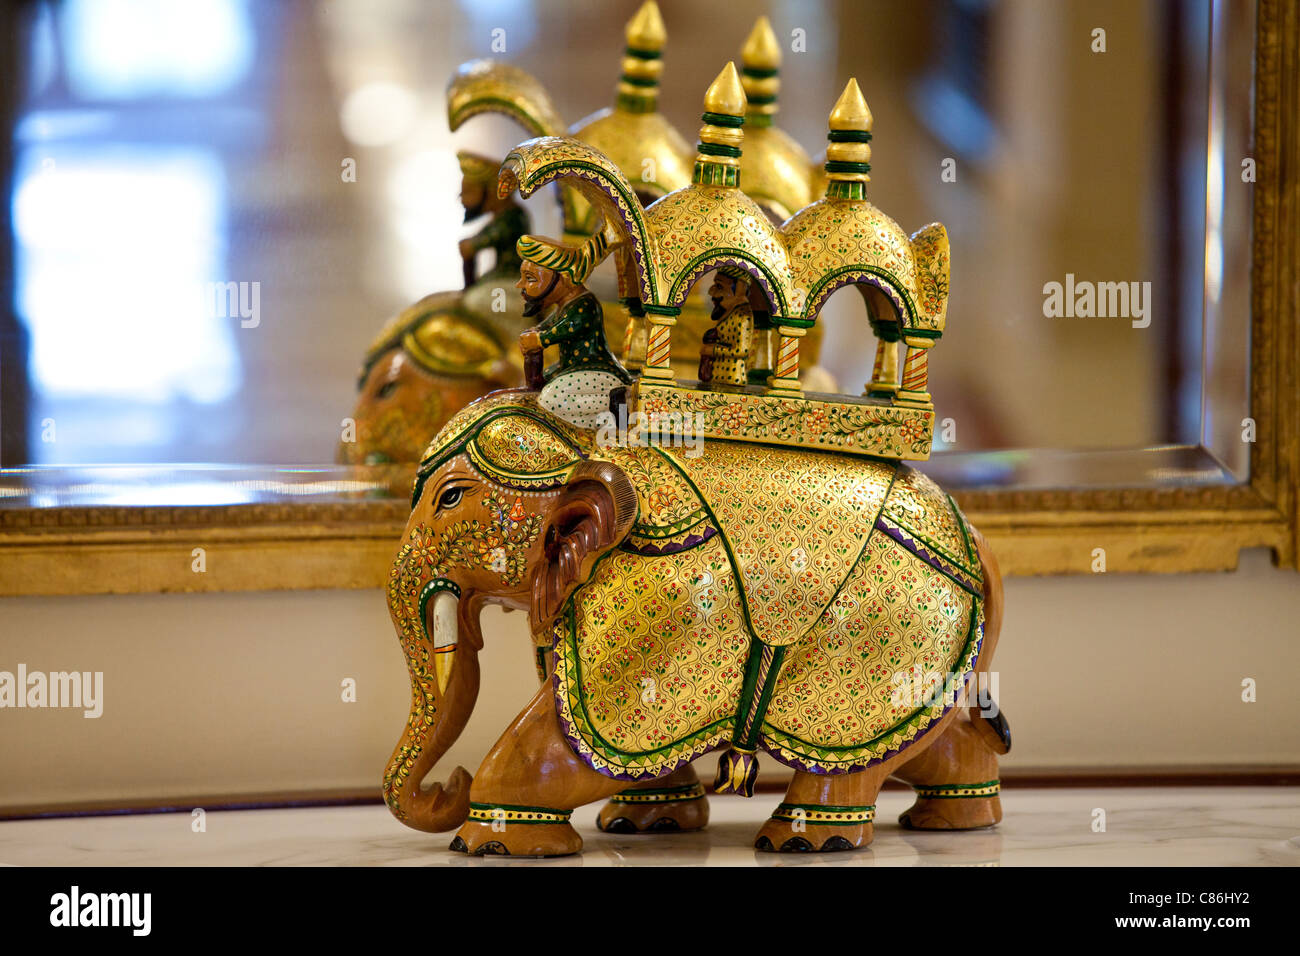 Legendäre Elefant Ornament The Imperial Hotel mit seinen luxuriösen kolonialer Eleganz, New Delhi, Indien Stockfoto